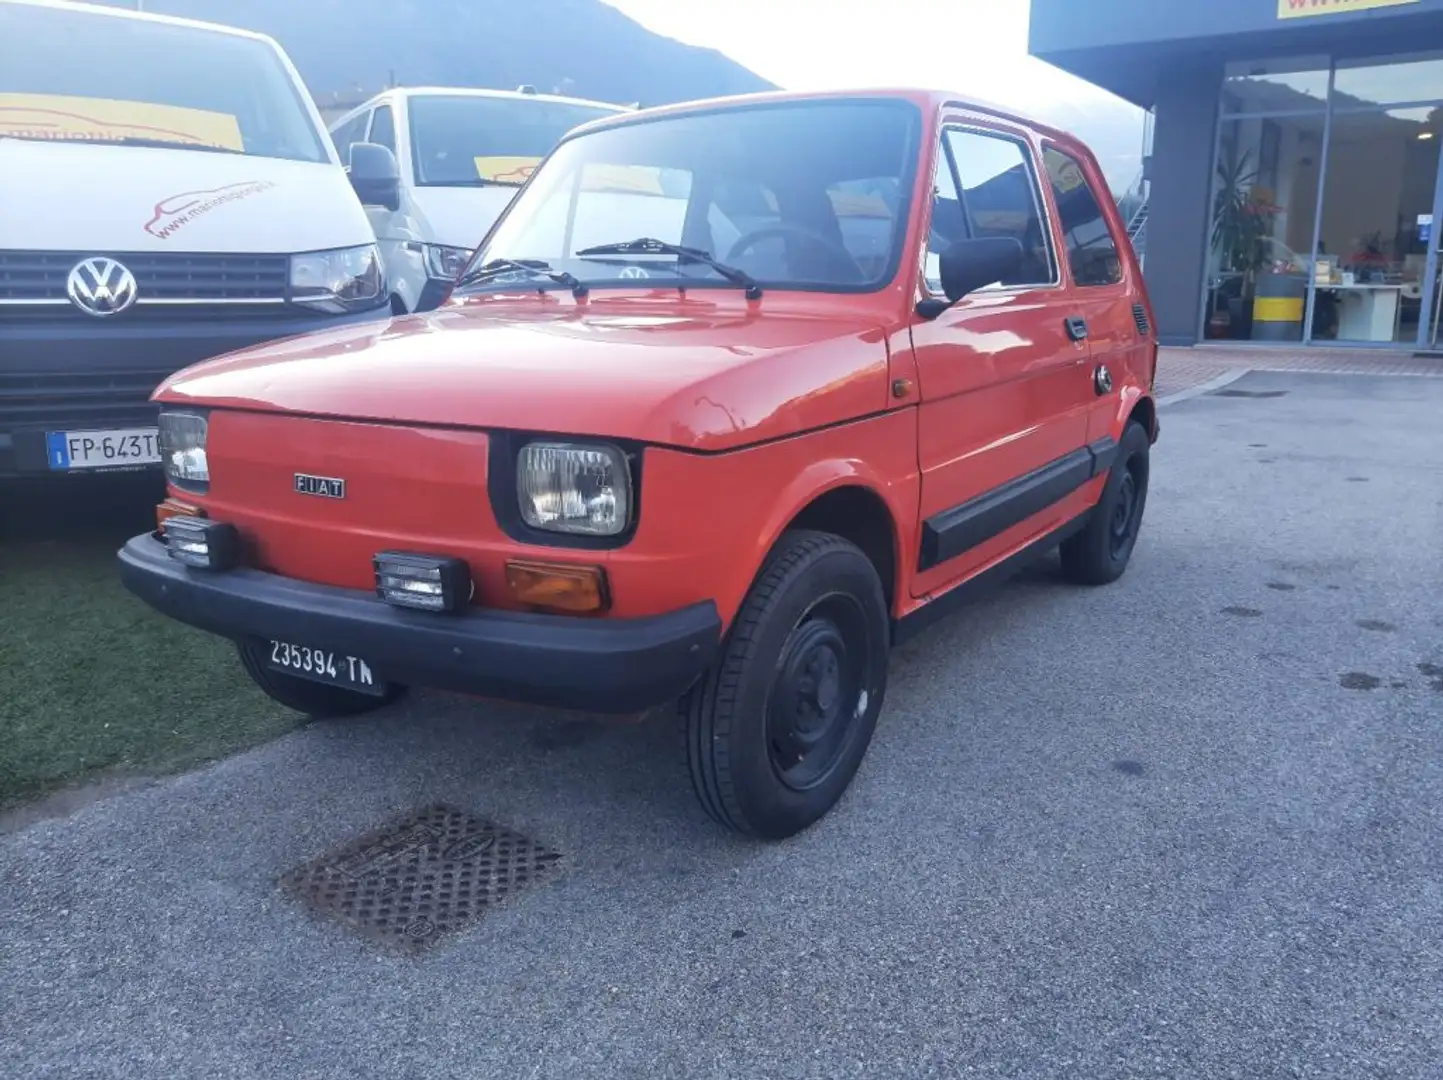 Fiat 126 650 Personal 4 - OK NEOPATENTATI - crvena - 1